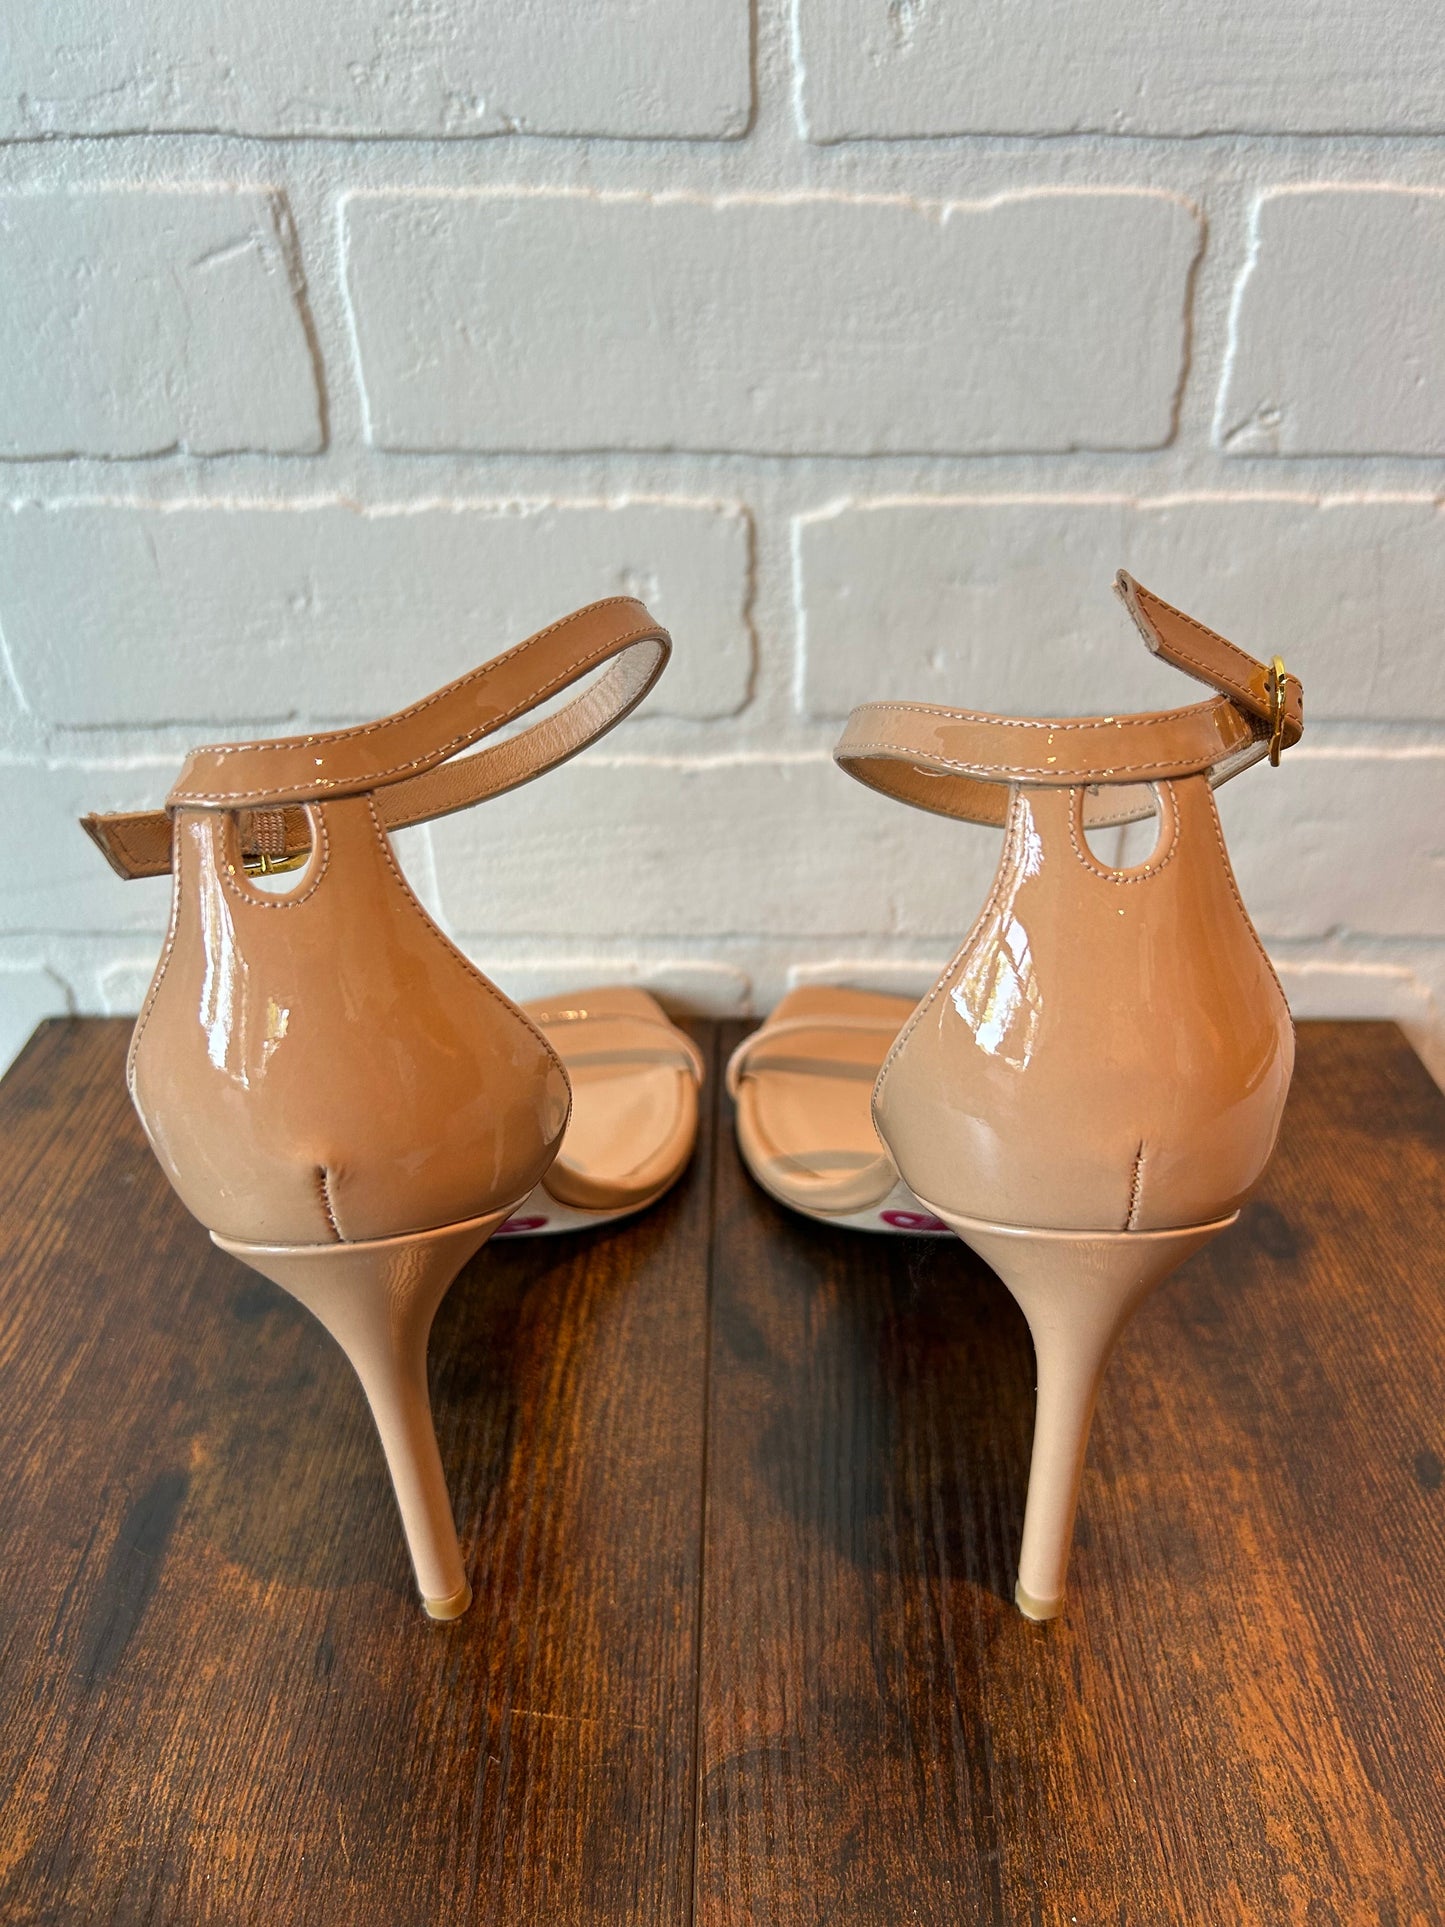 Sandals Designer By Stuart Weitzman  Size: 7.5